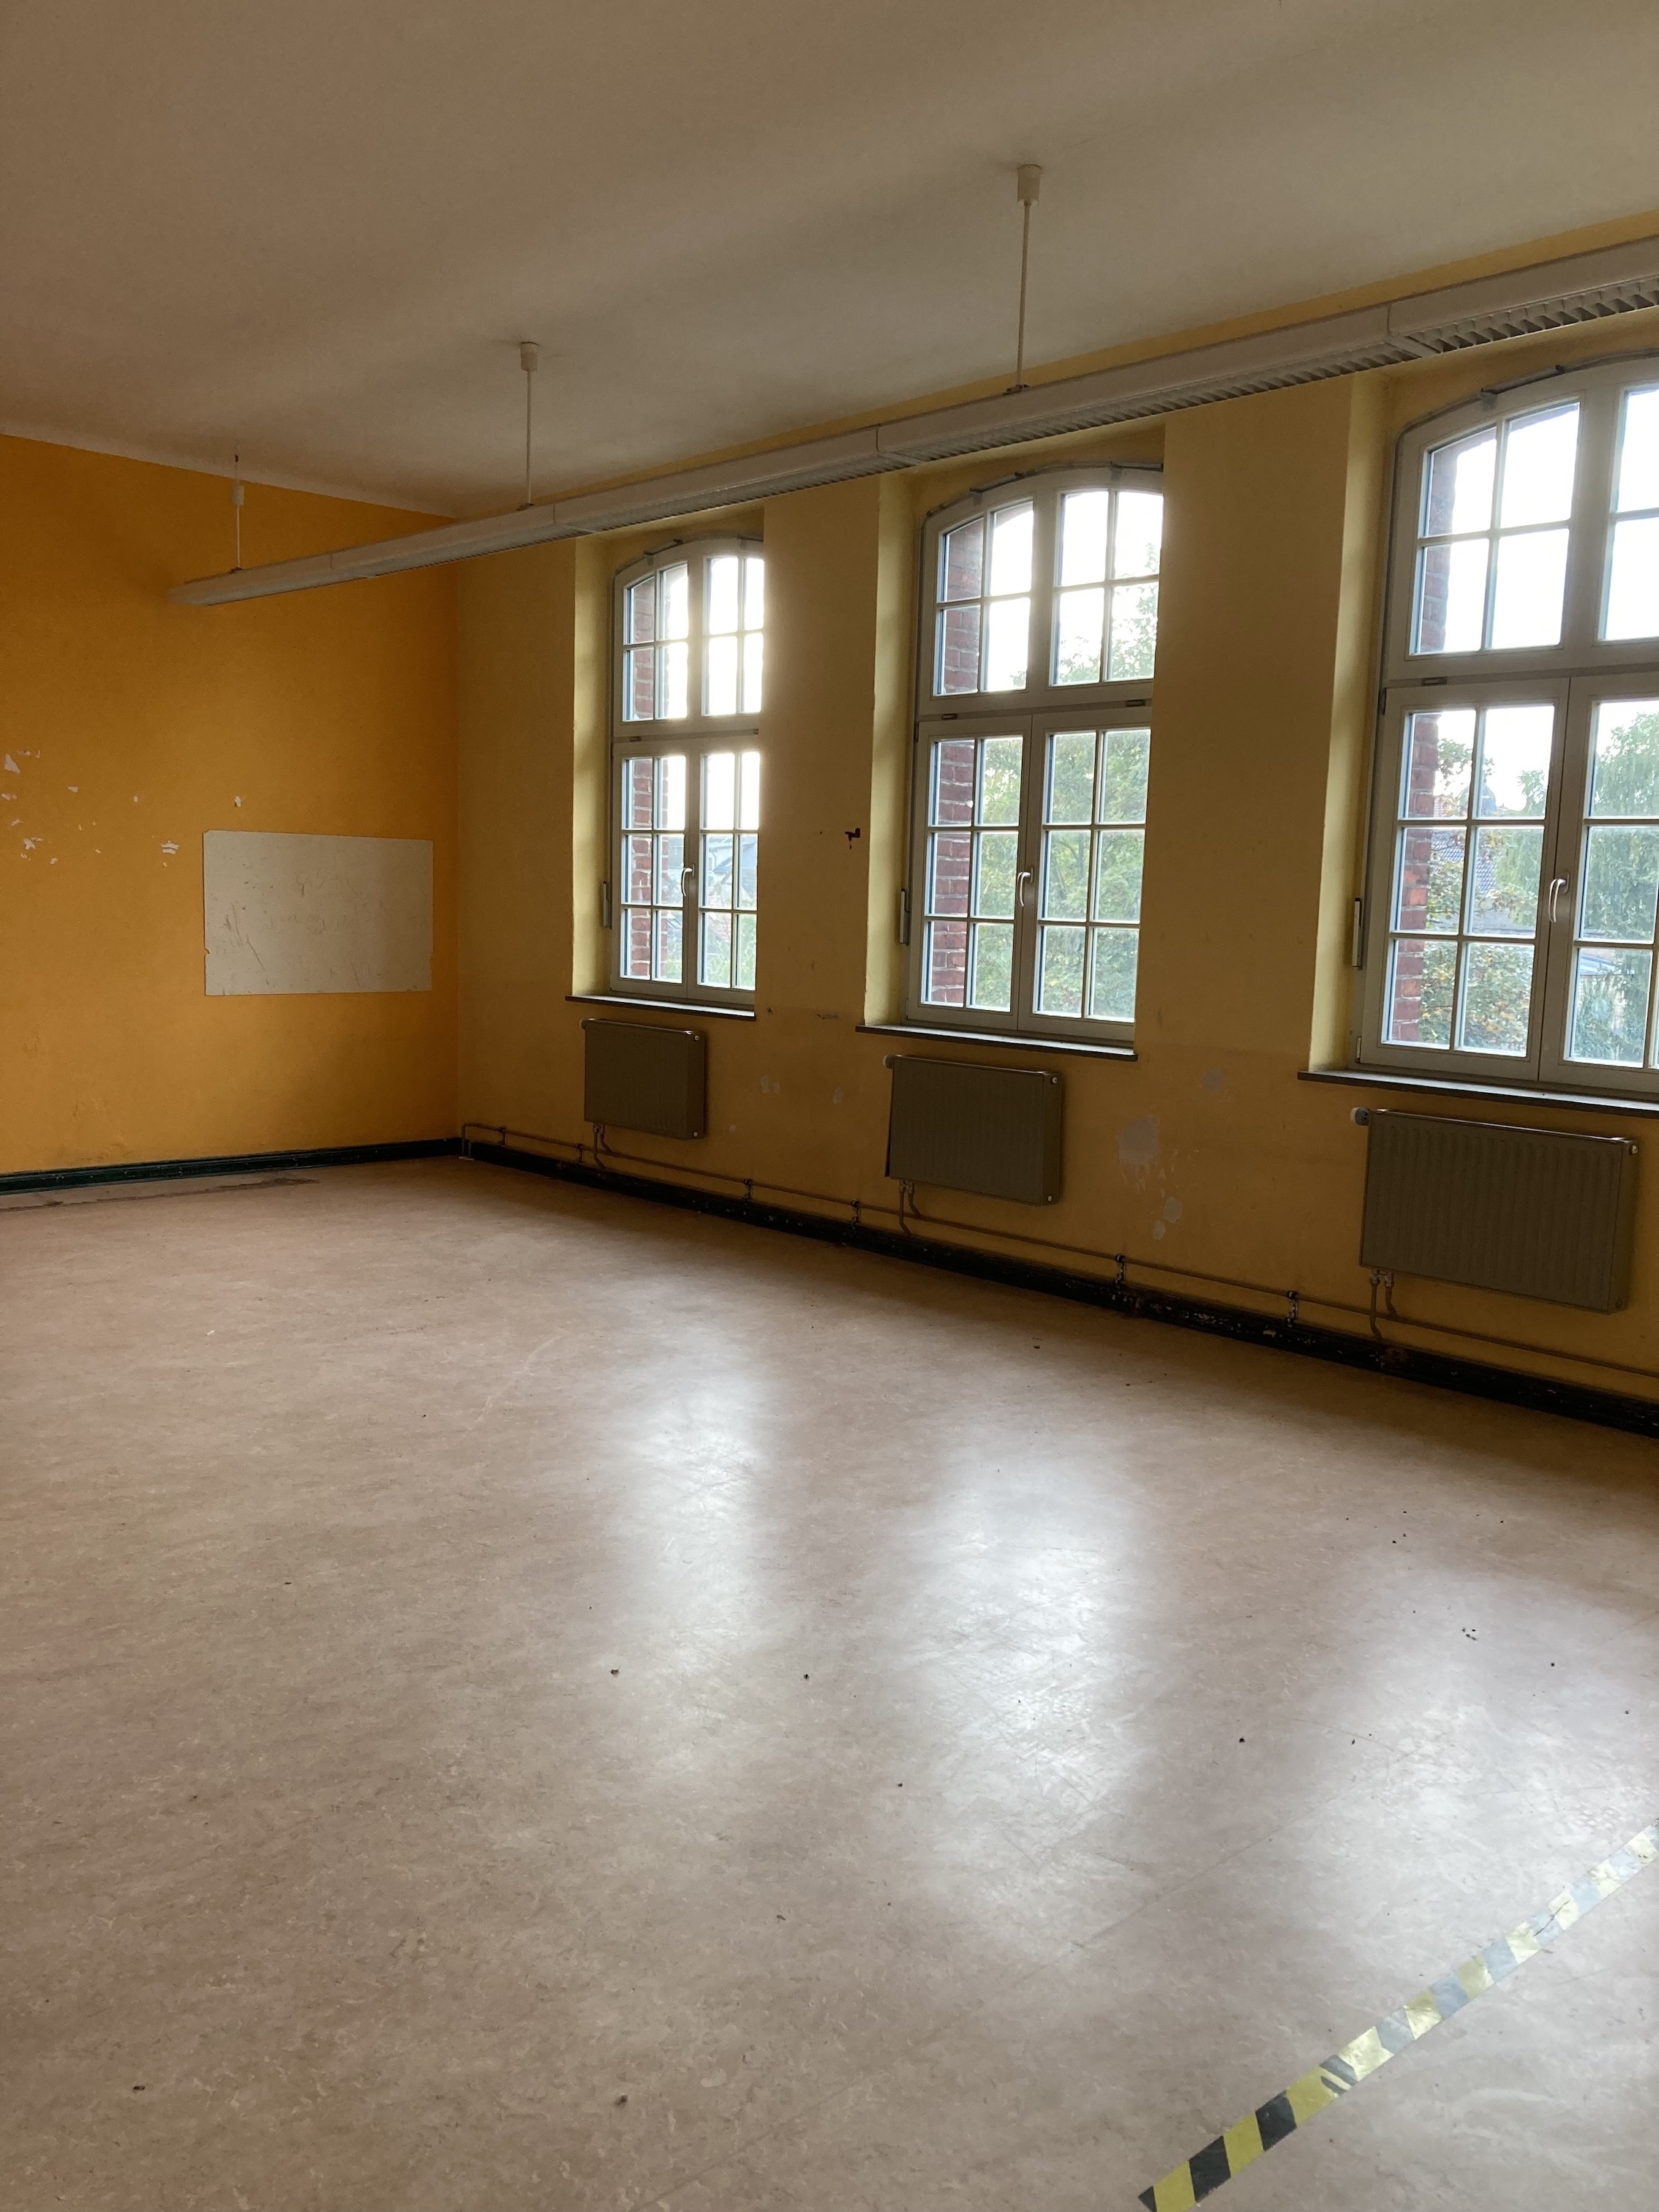 Die um die 50 Quadratmeter großen Klassenräume werden zukünftig einzeln oder zusammengeschlossen als Wohnraum dienen. - Photo: © Großraumbüro